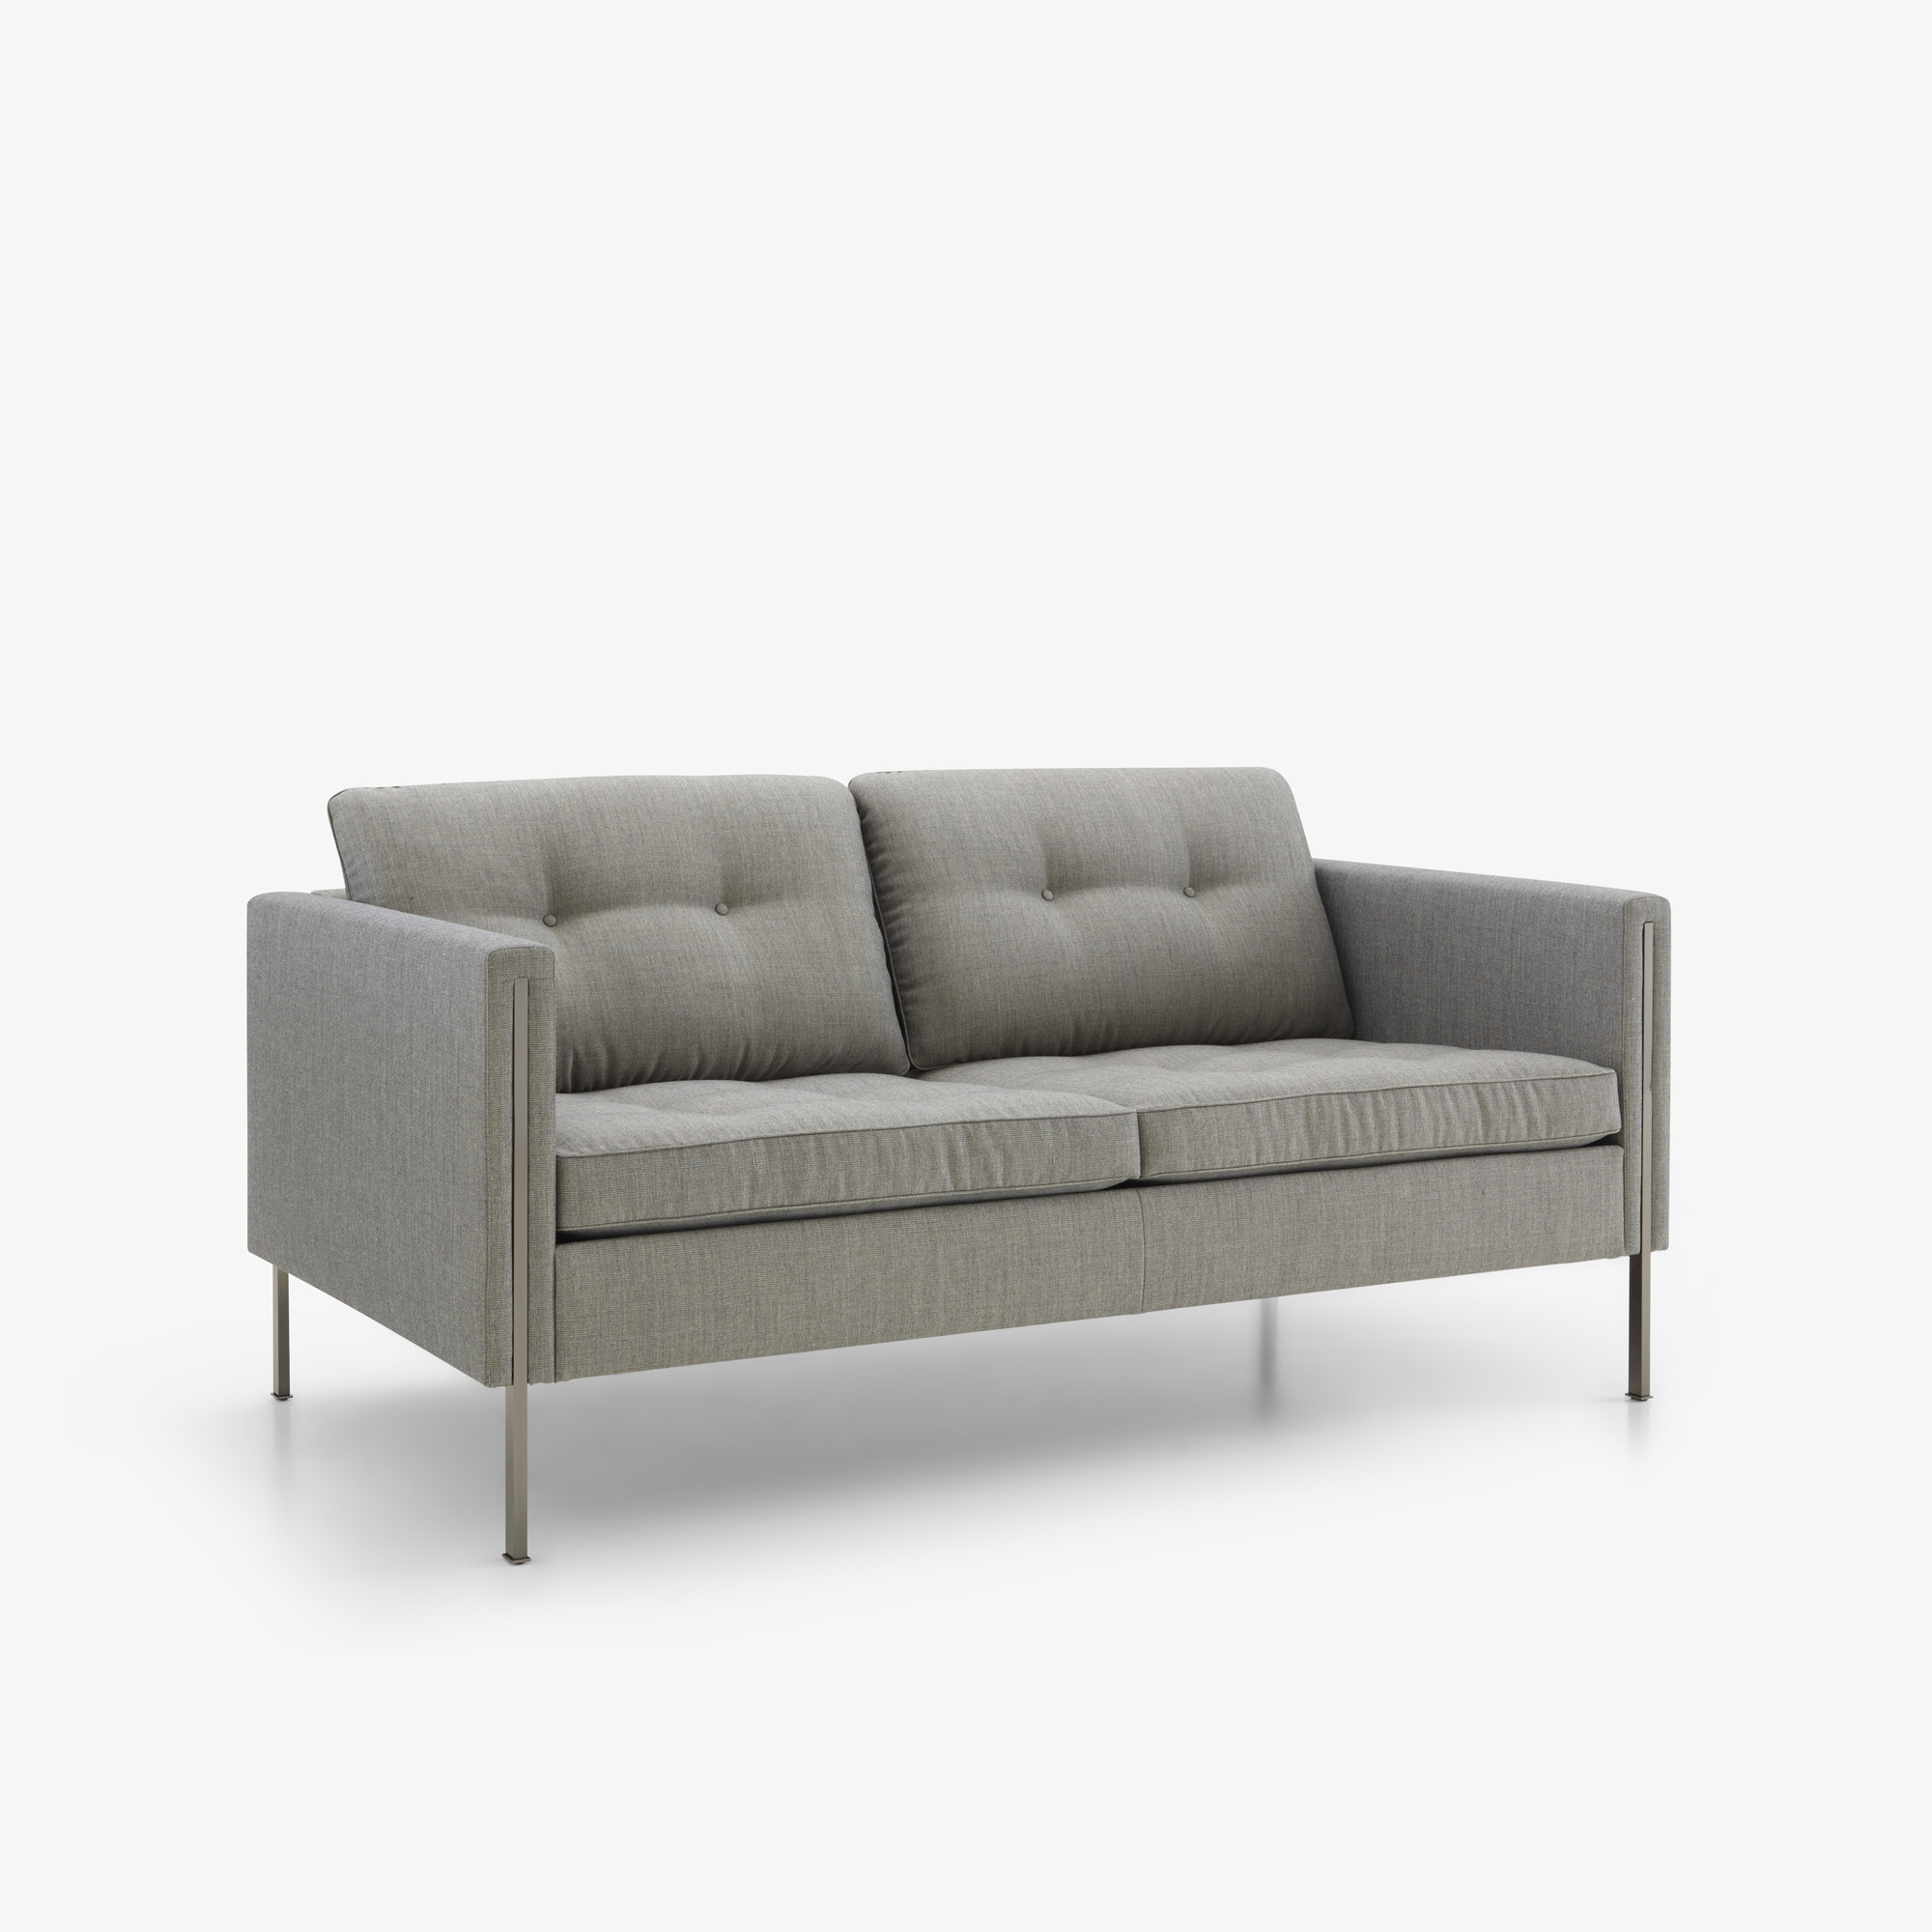 Image Medium sofa   2